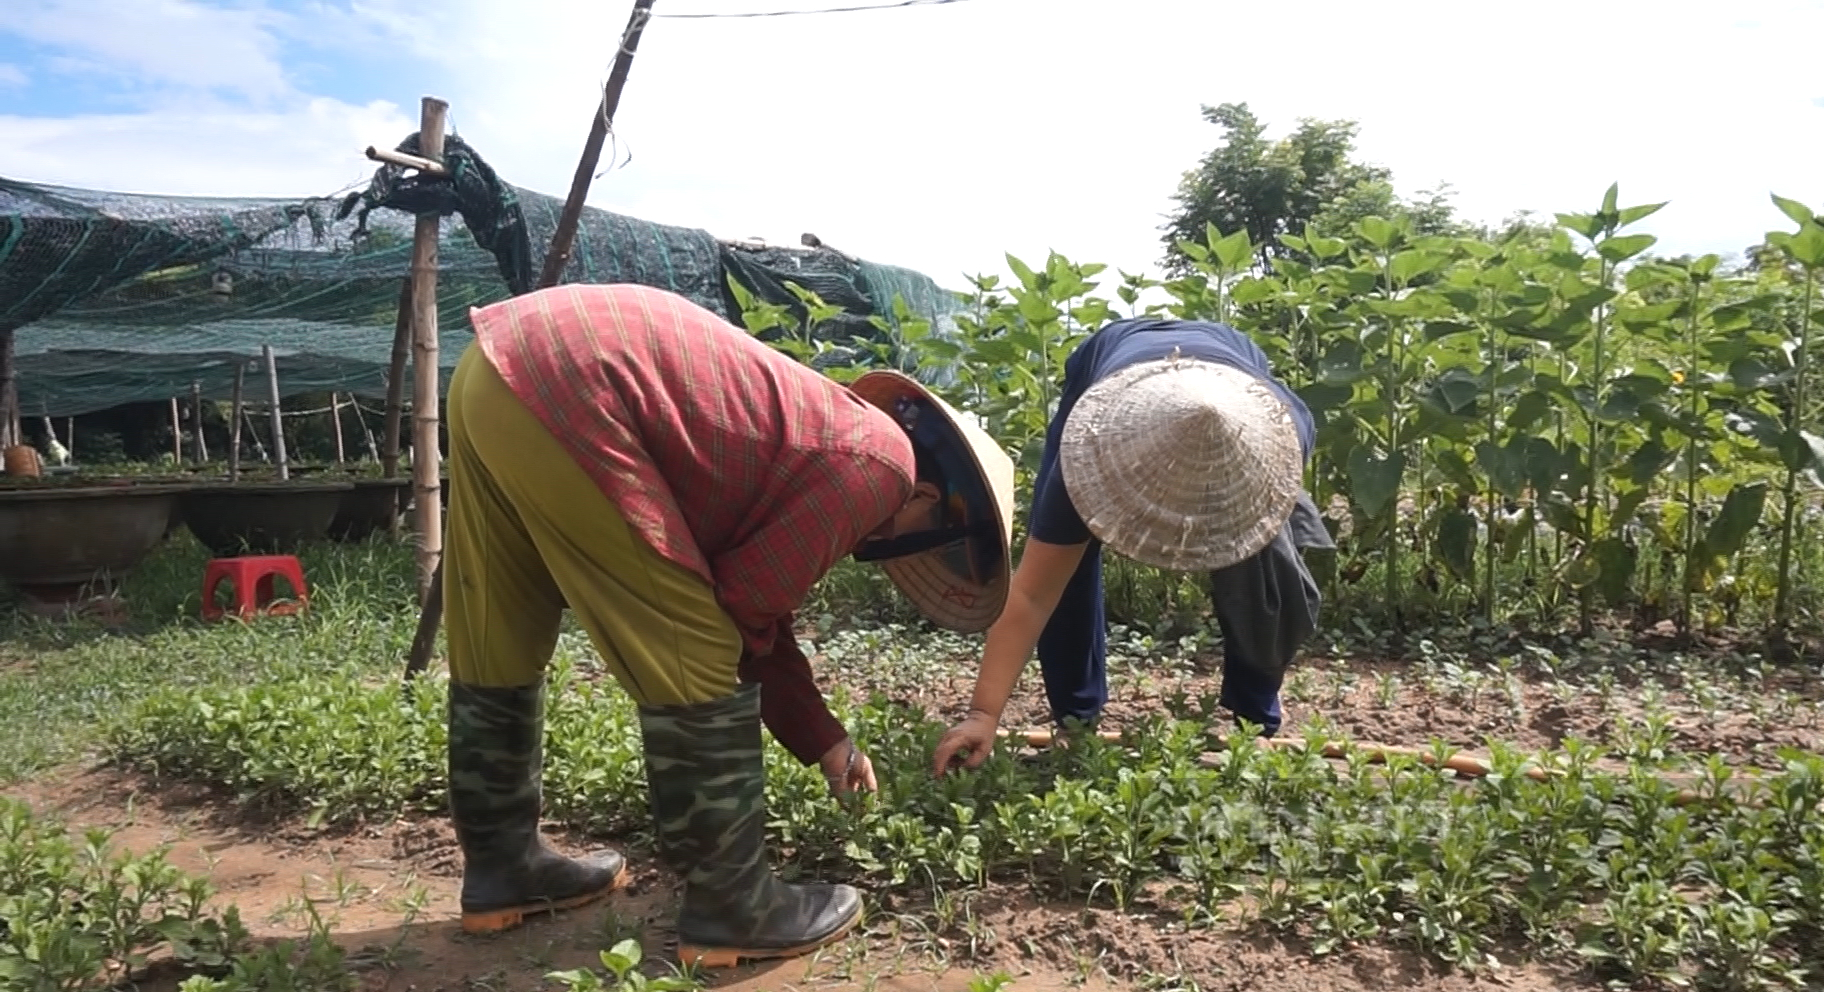 Đam mê trồng hoa, một phụ nữ ở Đà Nẵng thu lãi hàng trăm triệu mỗi năm - Ảnh 6.